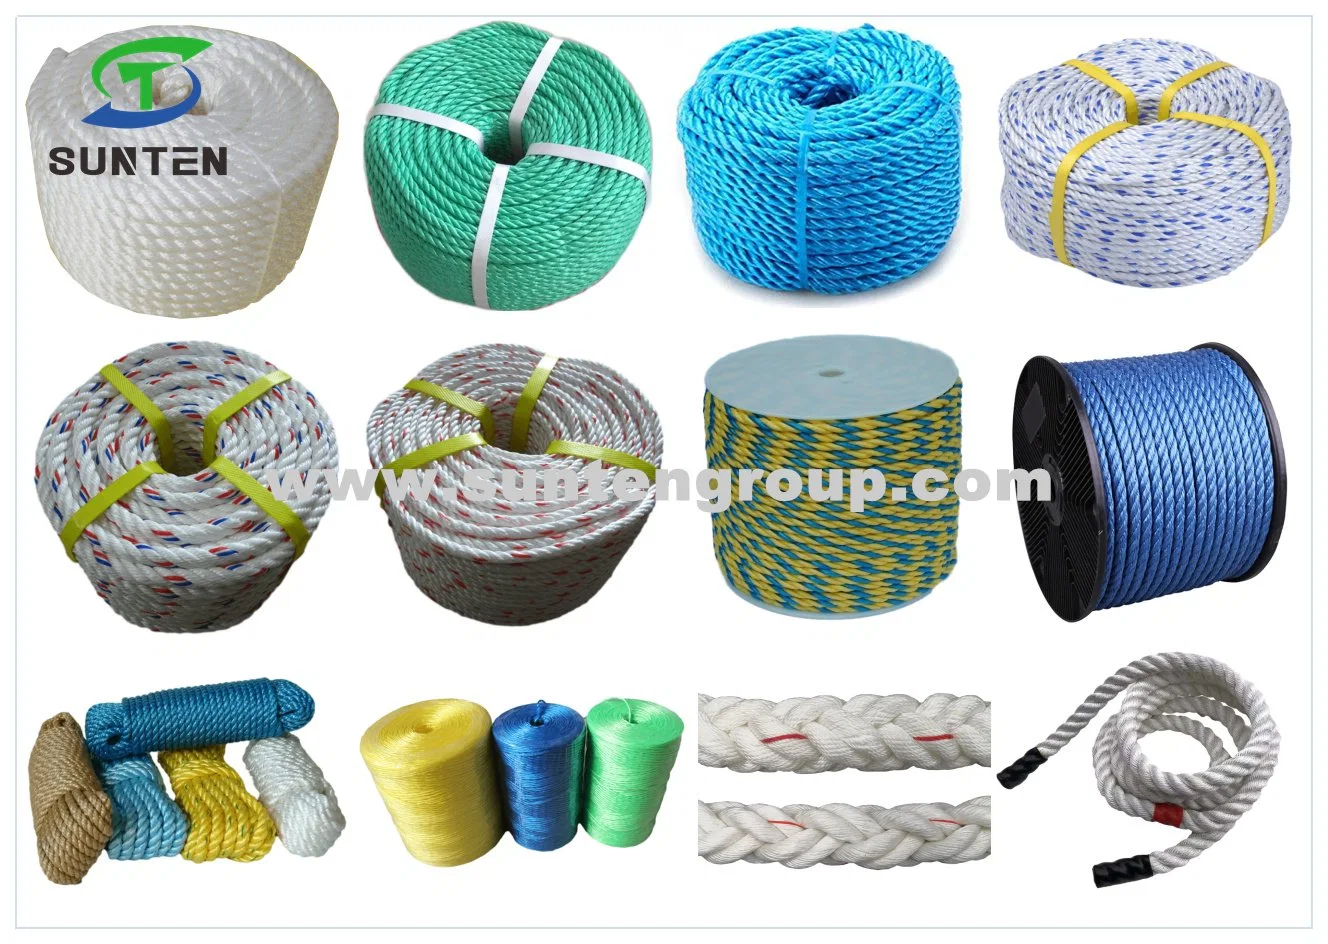 PP/PE/HDPE/Nylon/Polyethylene/Polypropylene/Polyester/Polyamide/UHMWPE/Plastic/Winch/Static/Safety/Twisted/Braided/Clothes/Fishing/Marine/Mooring/Packing Rope